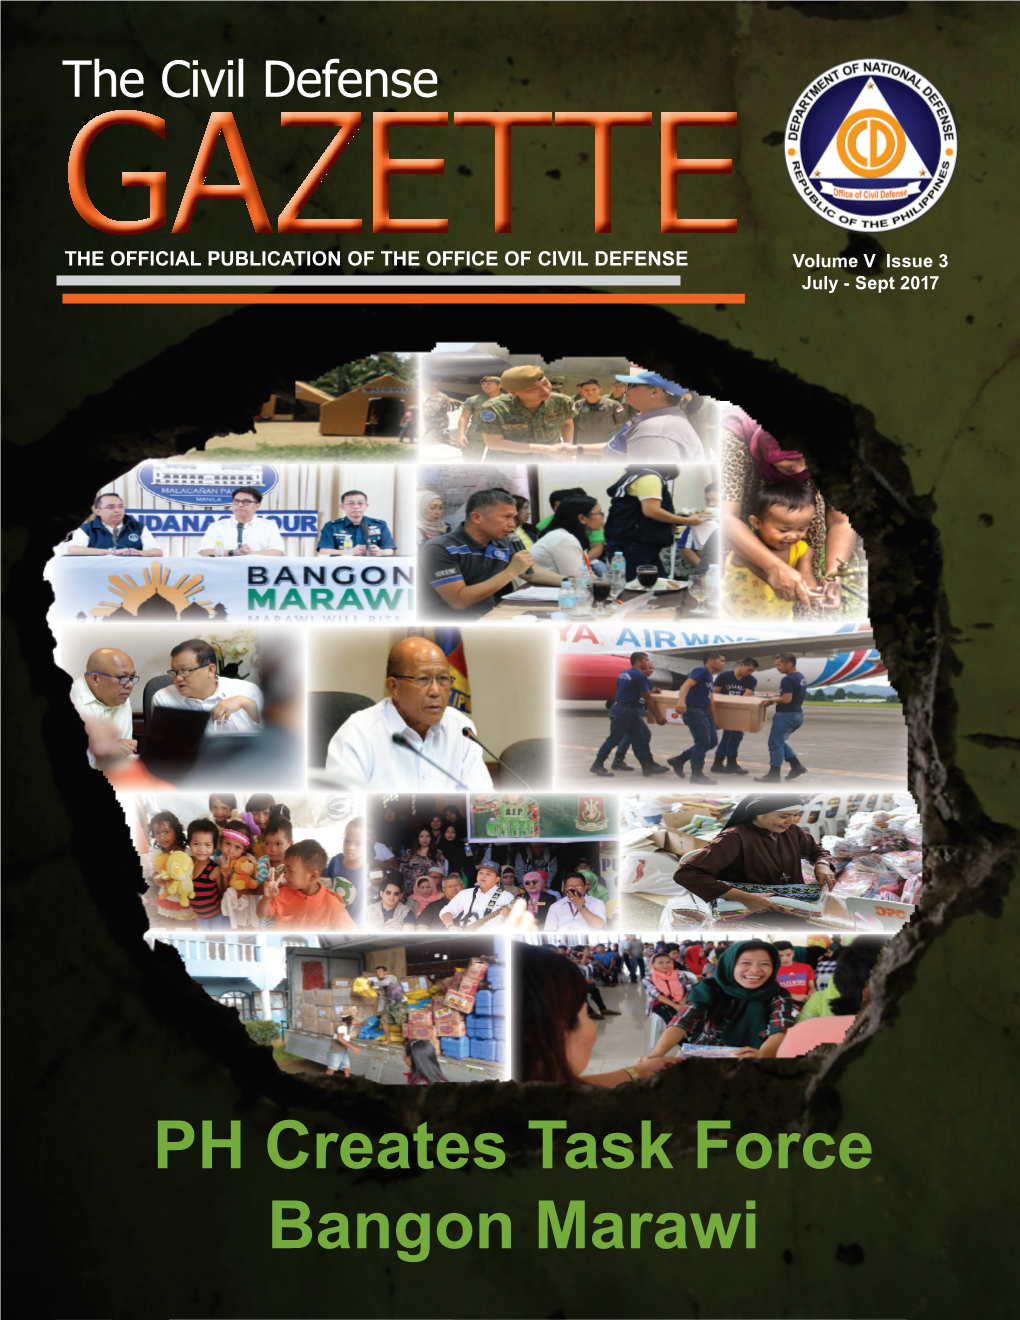 PH Creates Task Force Bangon Marawi